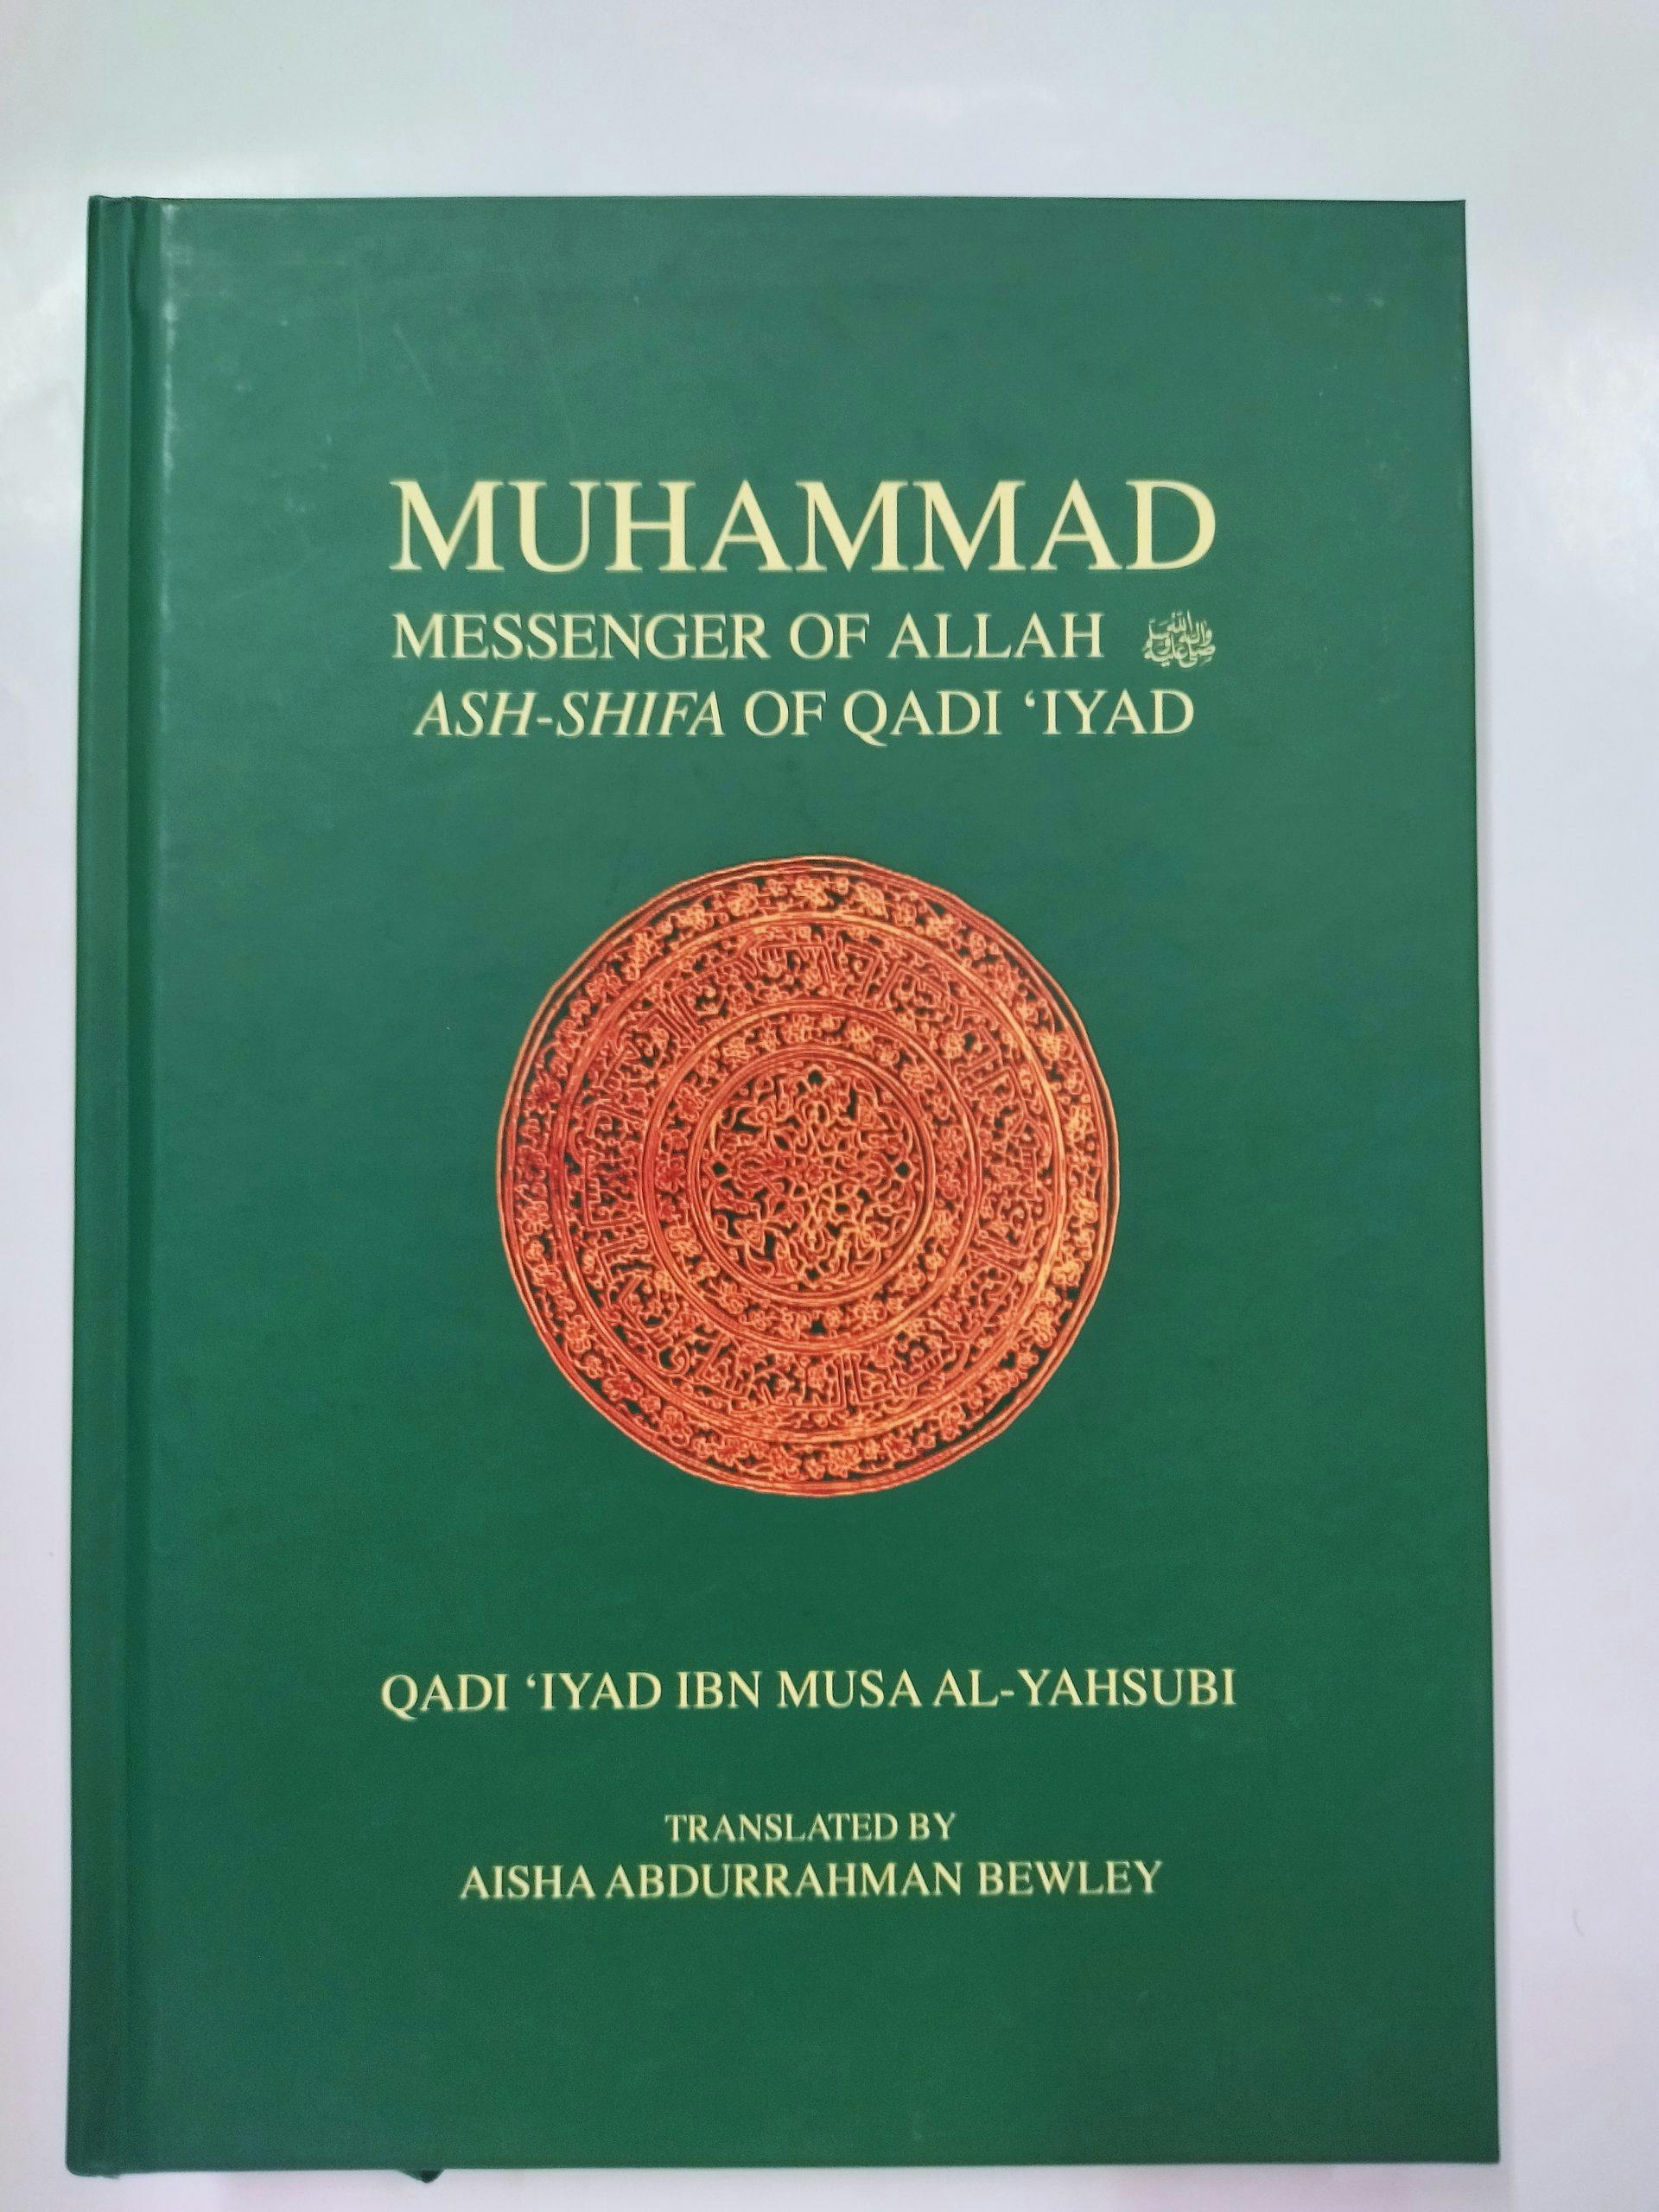 Muhammad Messenger of Allah Ash-Shifa of Qadi 'Iyad